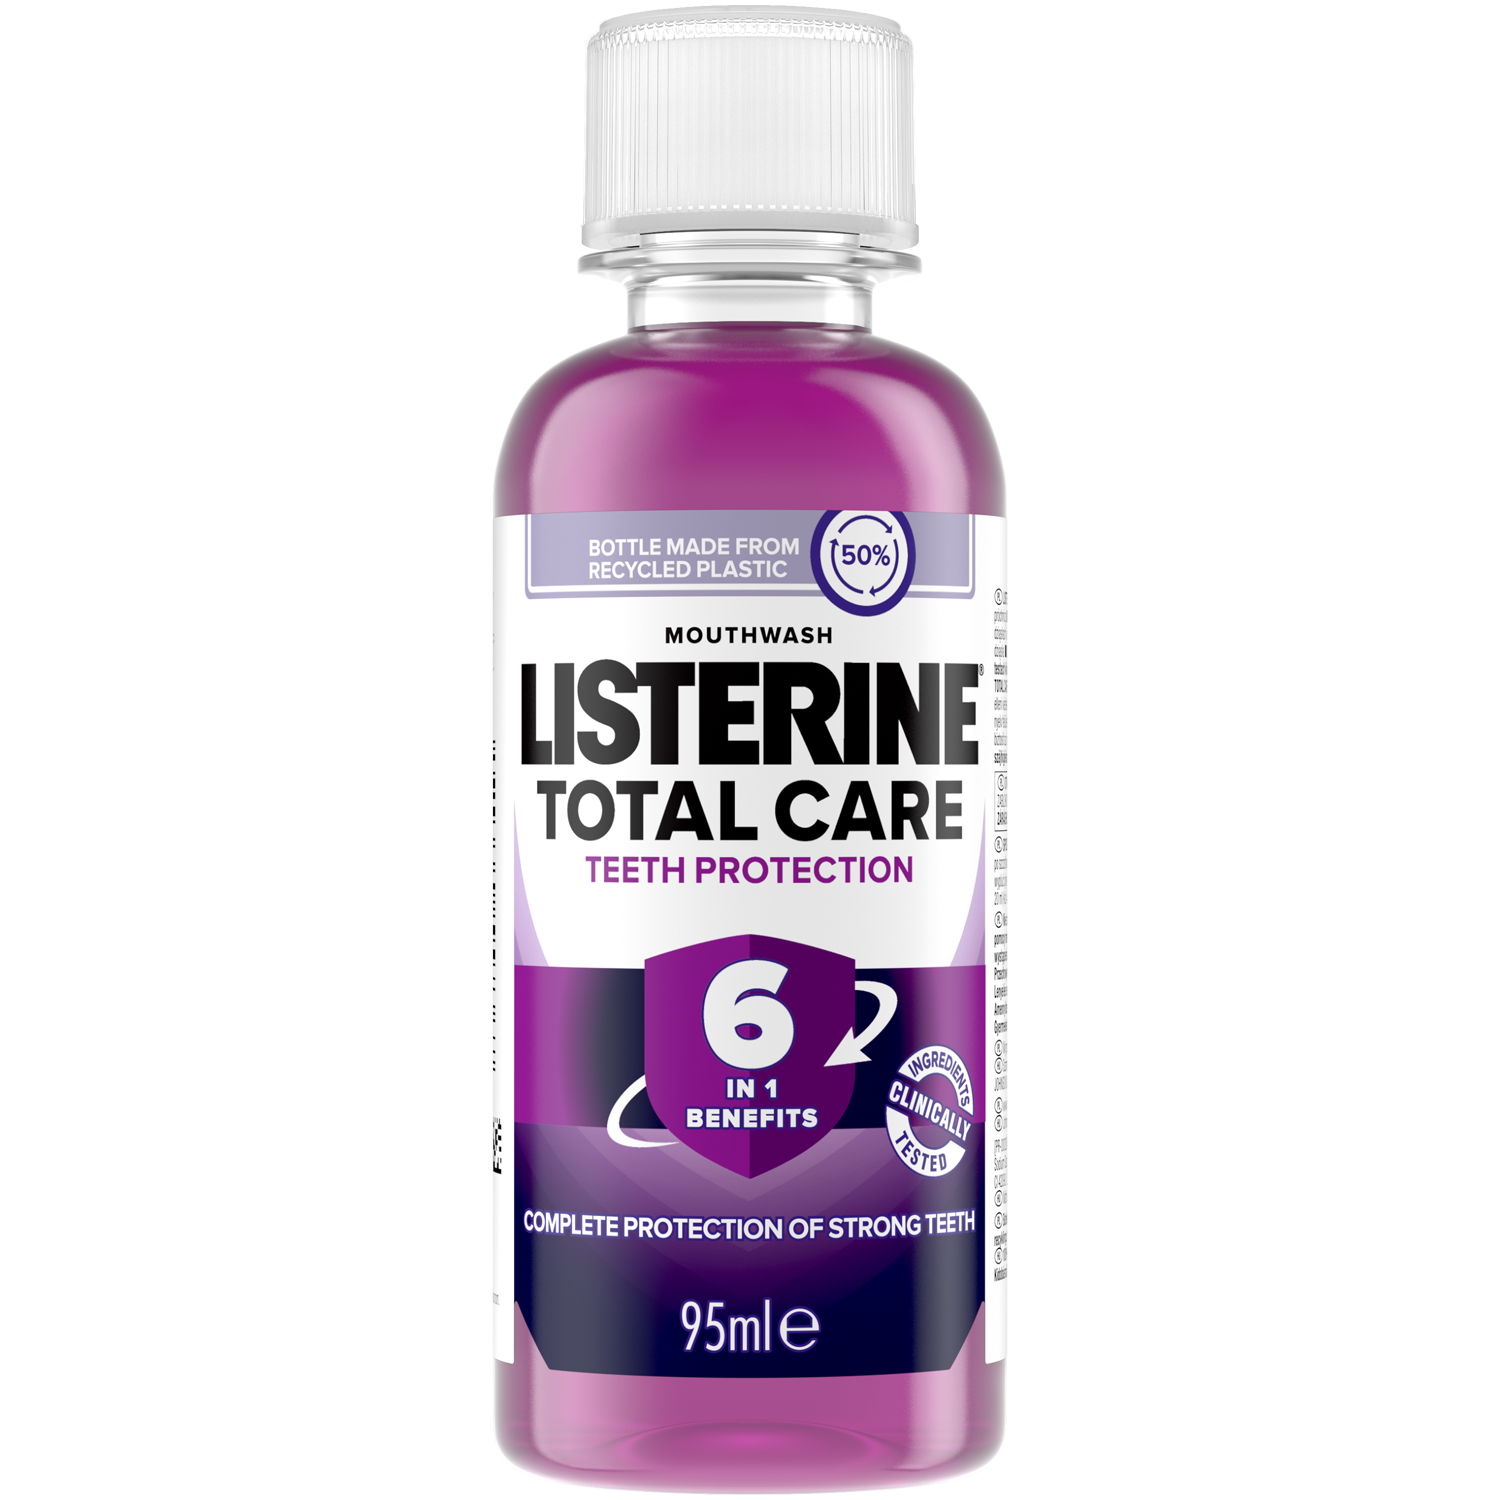 Listerine Total Care жидкость для полоскания рта, 95 мл